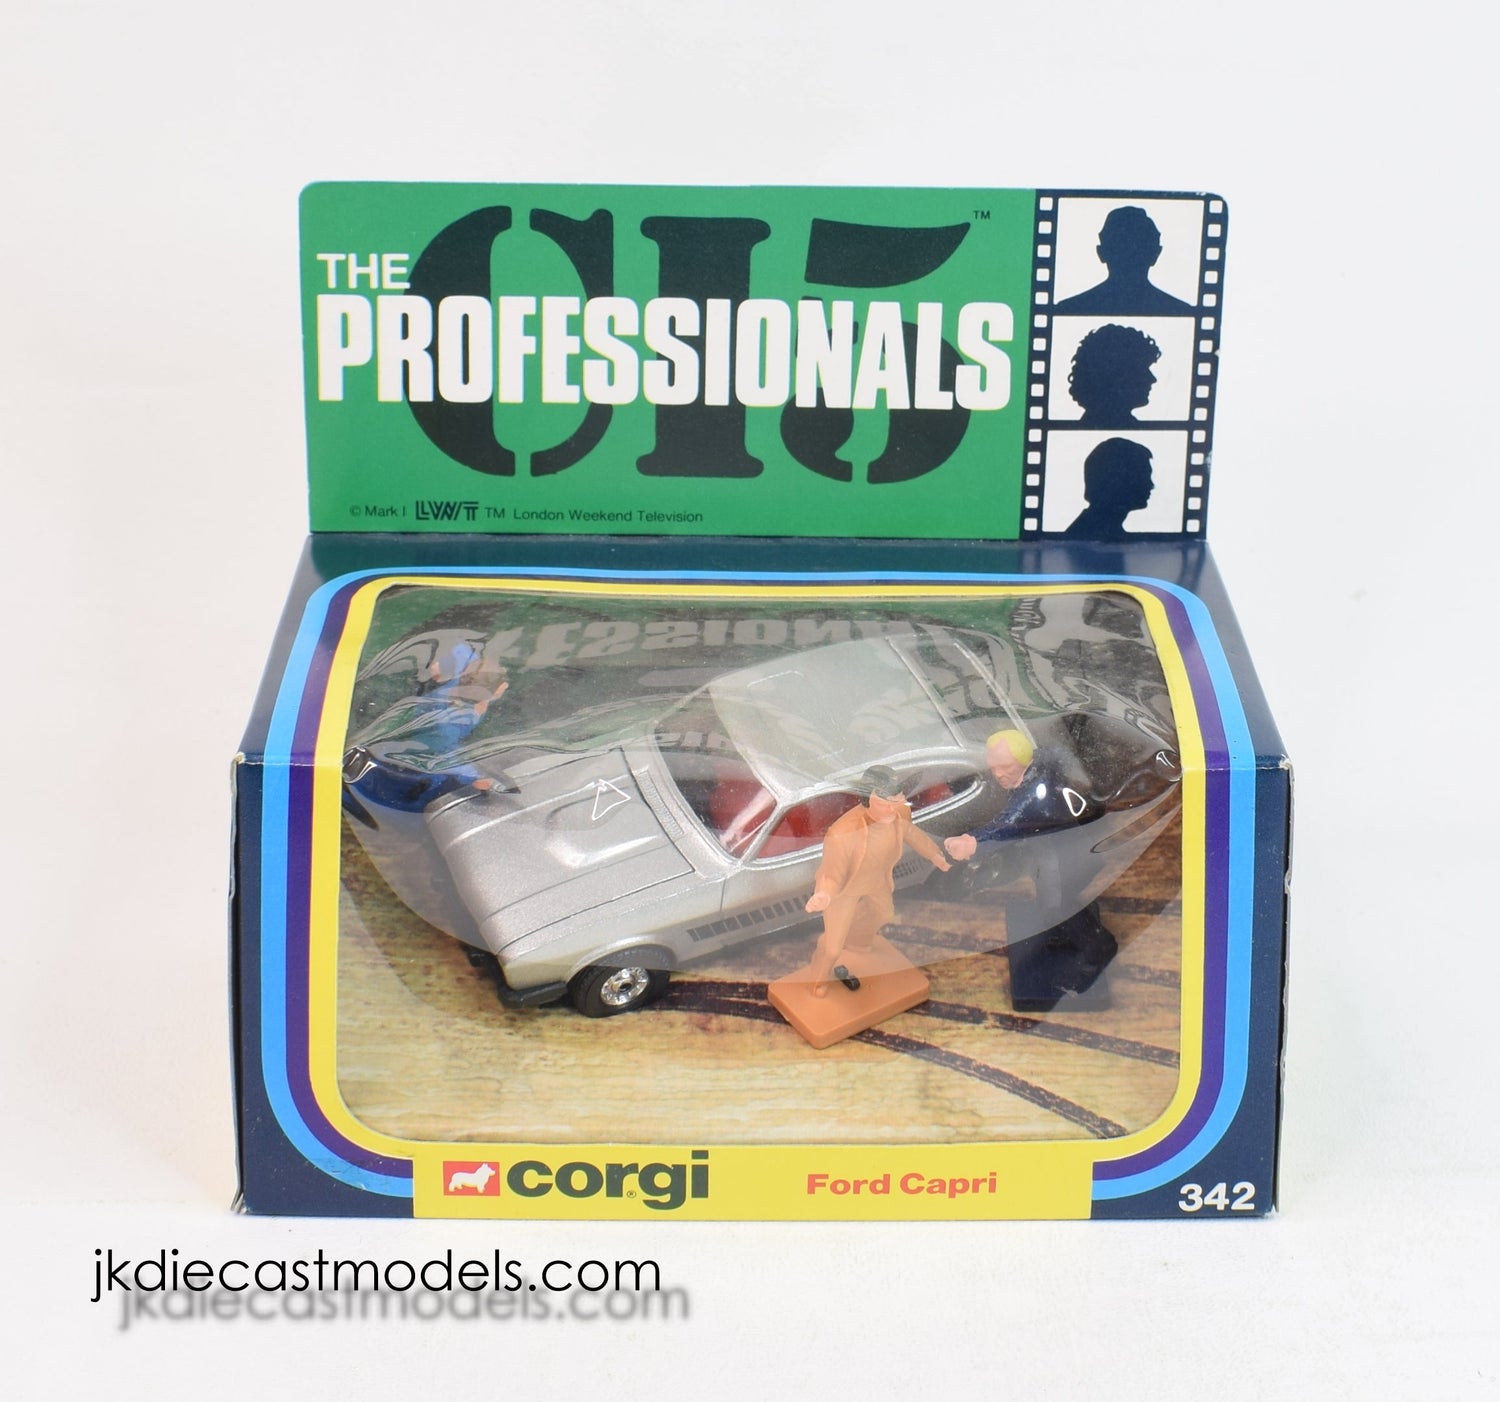 Corgi toys 342 The Professionals - Ford Capri Mint/Lovely box